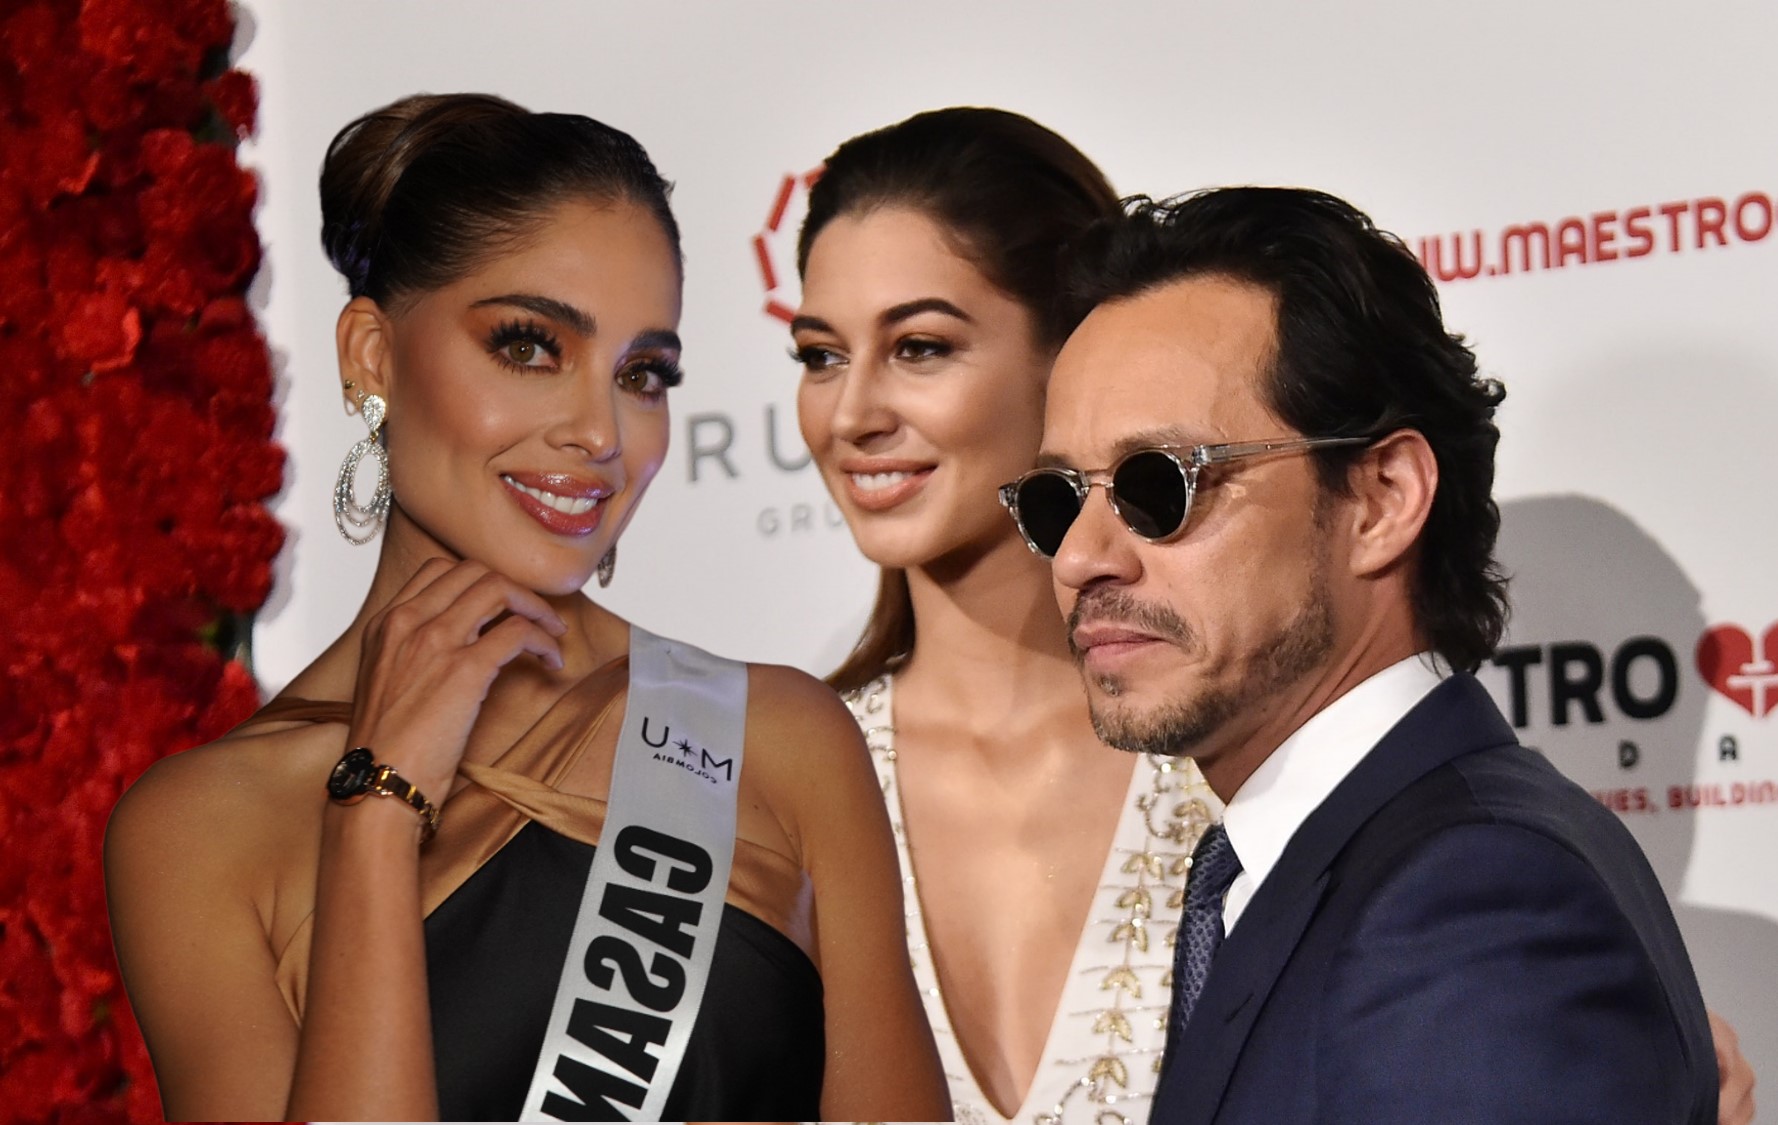 Camila Avella, Mariana Downing y Marc Anthony, en nota sobre que las mujeres serán rivales en Miss Universo 2023